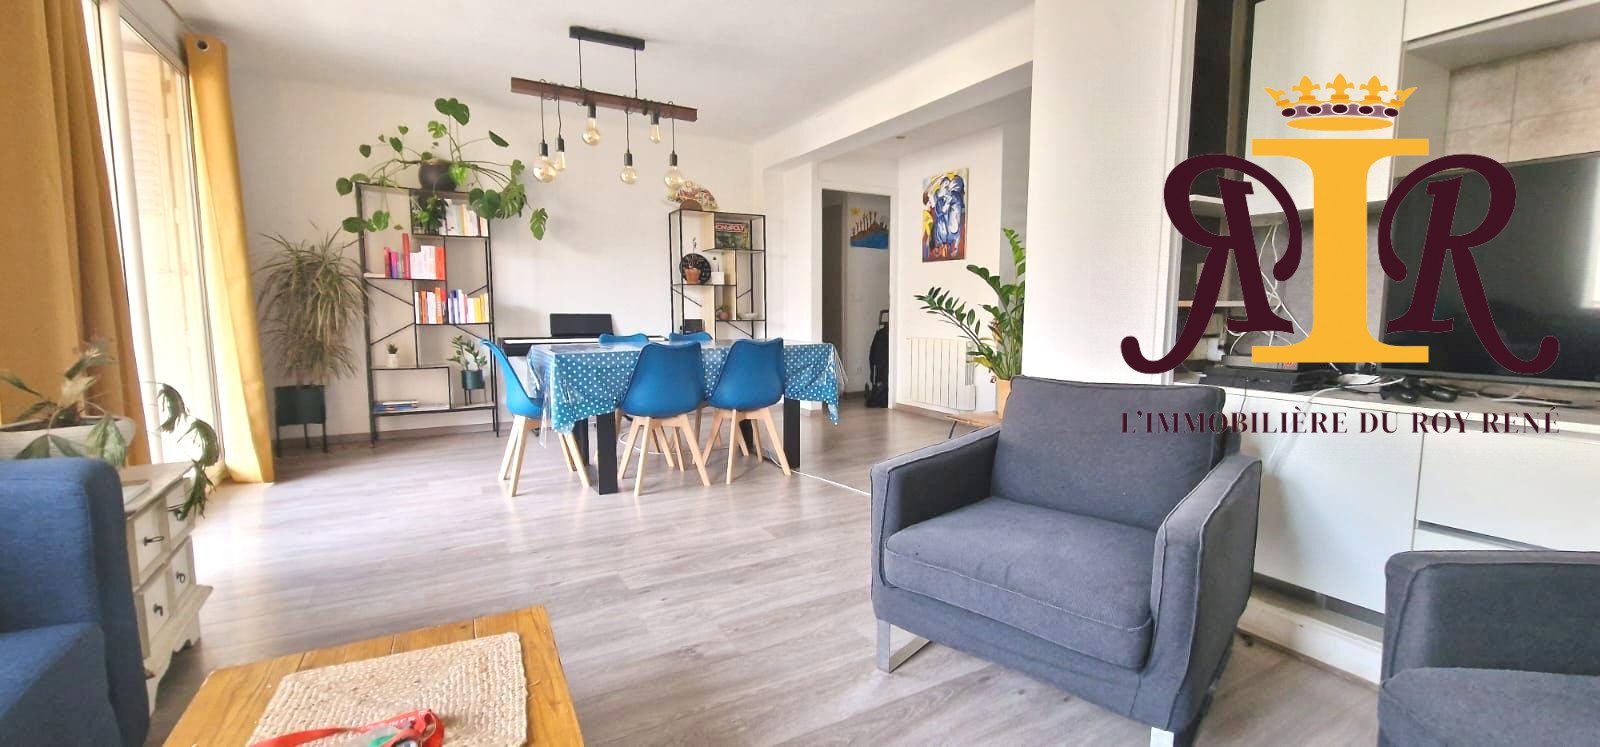 Vente Appartement 65m² 4 Pièces à Aix en Provence (13100) - Immobiliere Du Roy Rene